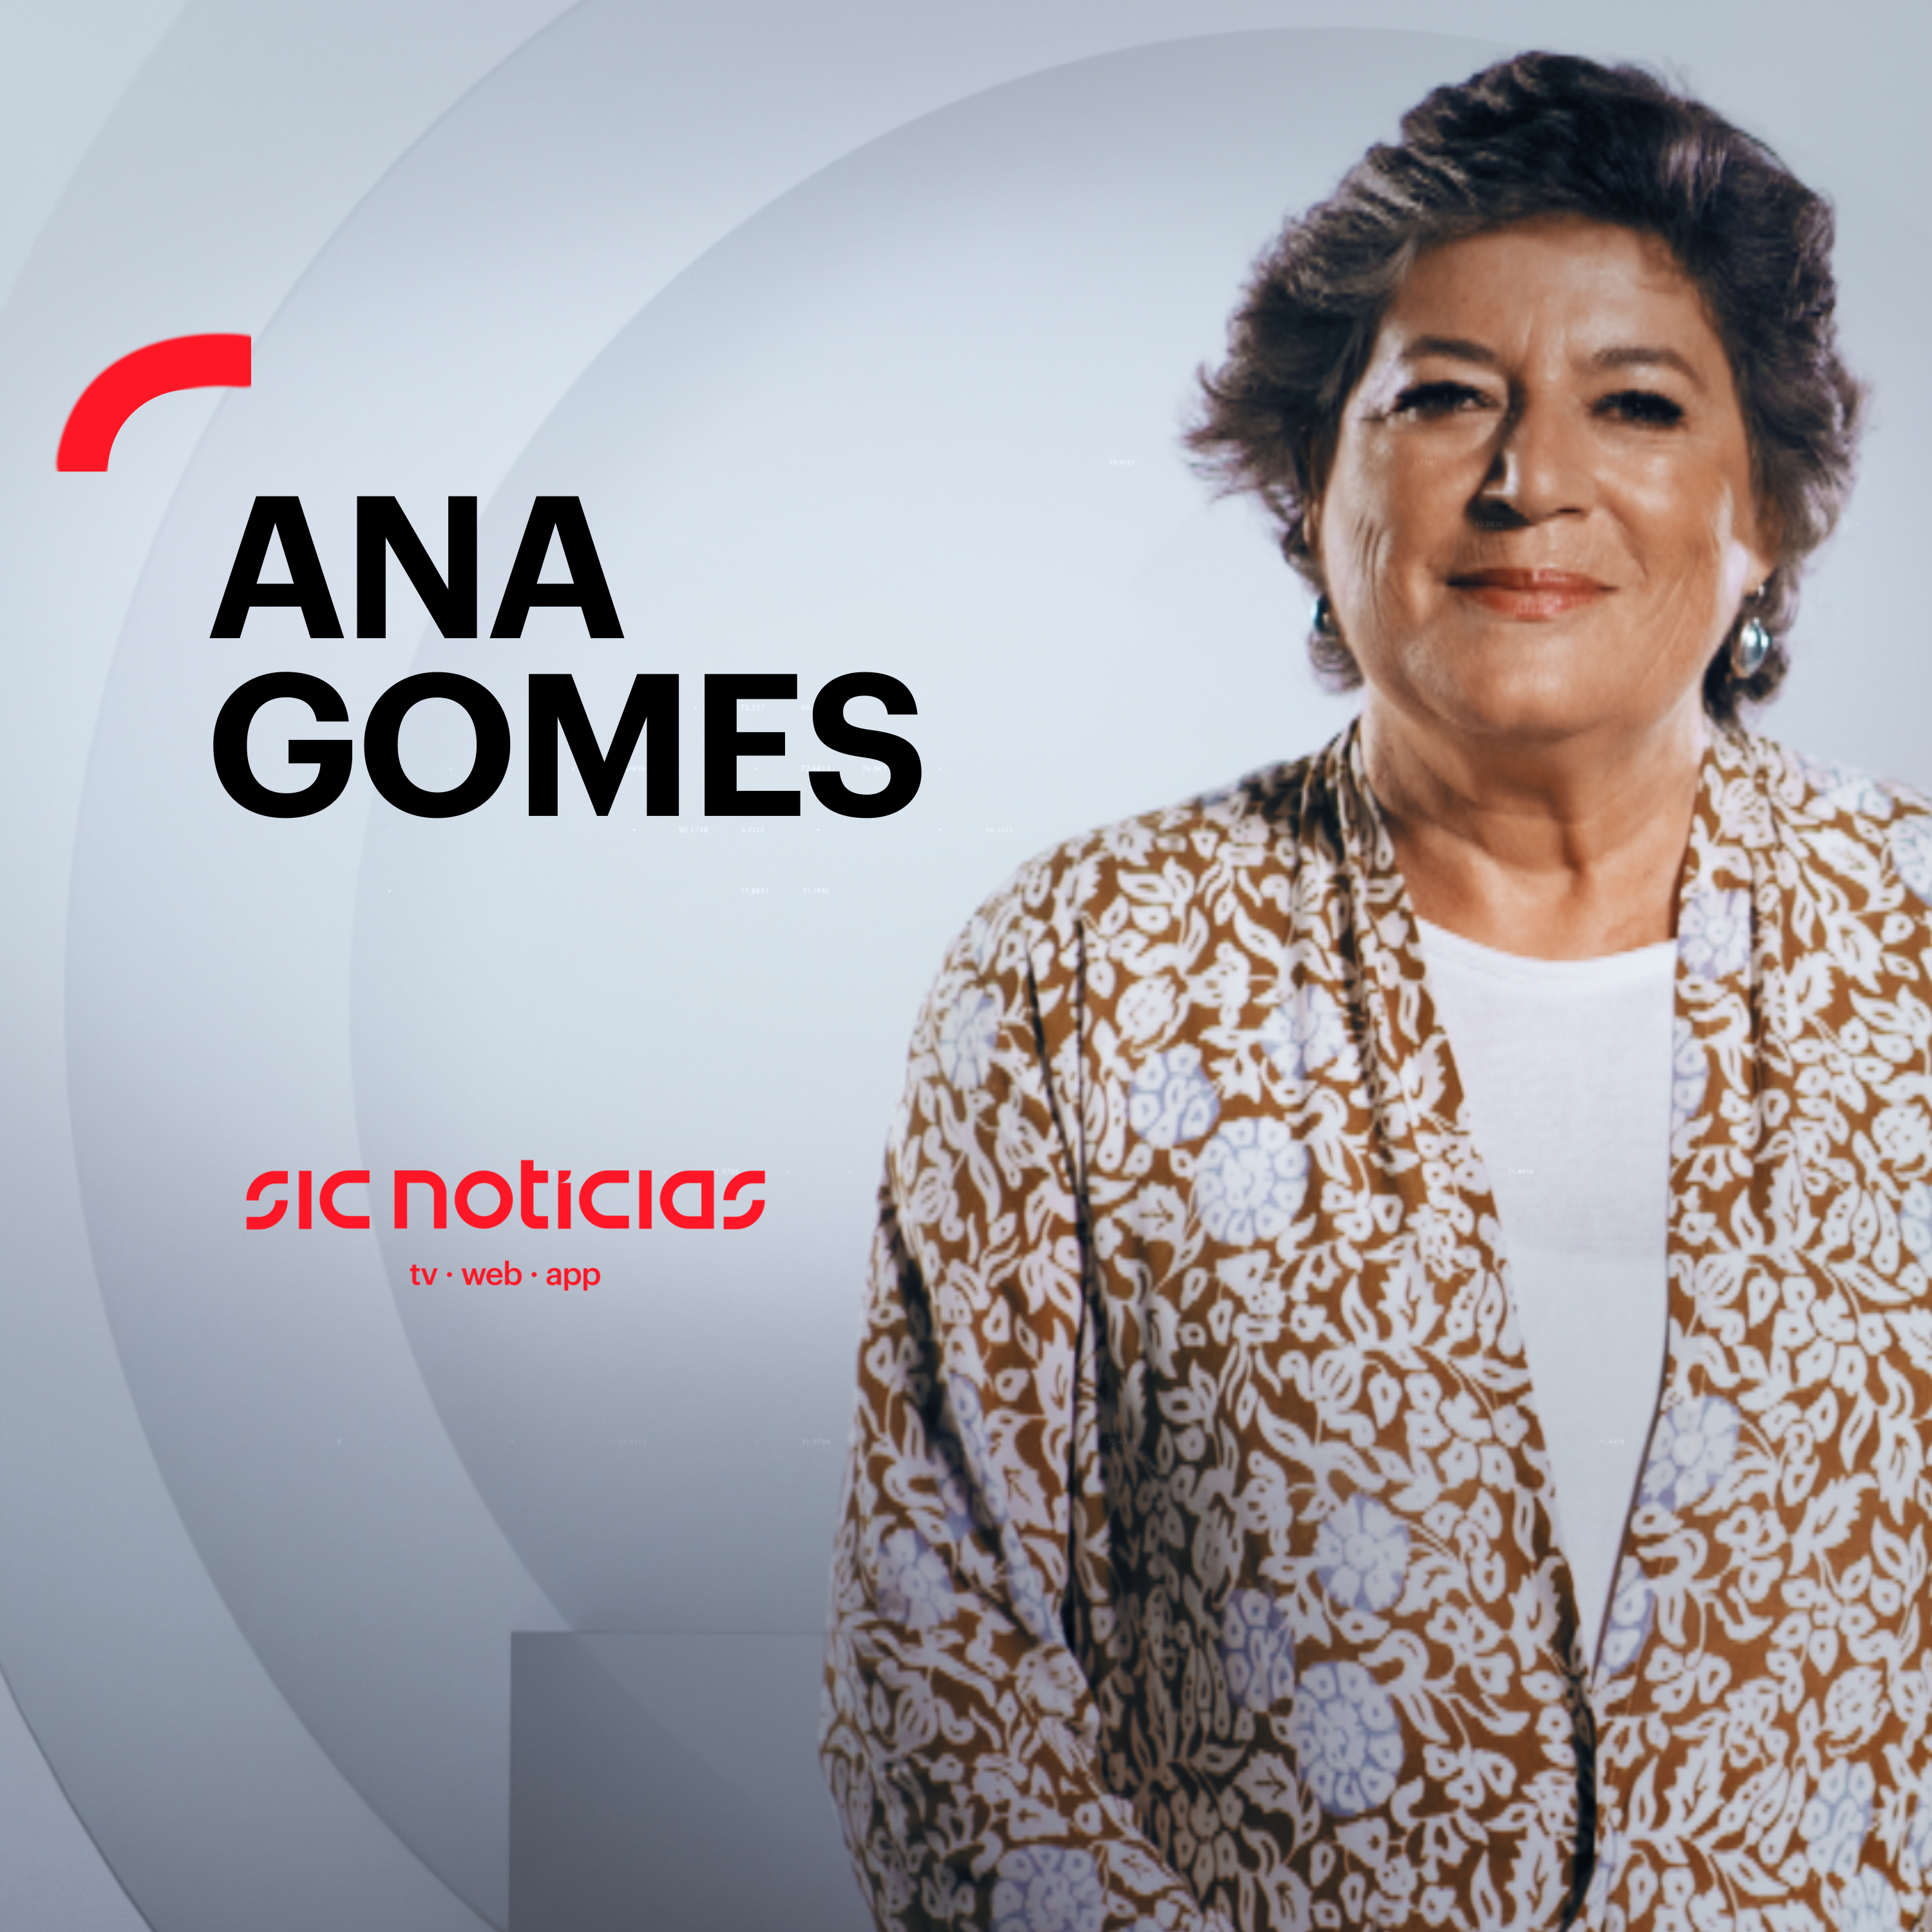 Ana Gomes sobre violência no Porto: “Justiça popular nunca se justifica num estado de Direito e democrático”